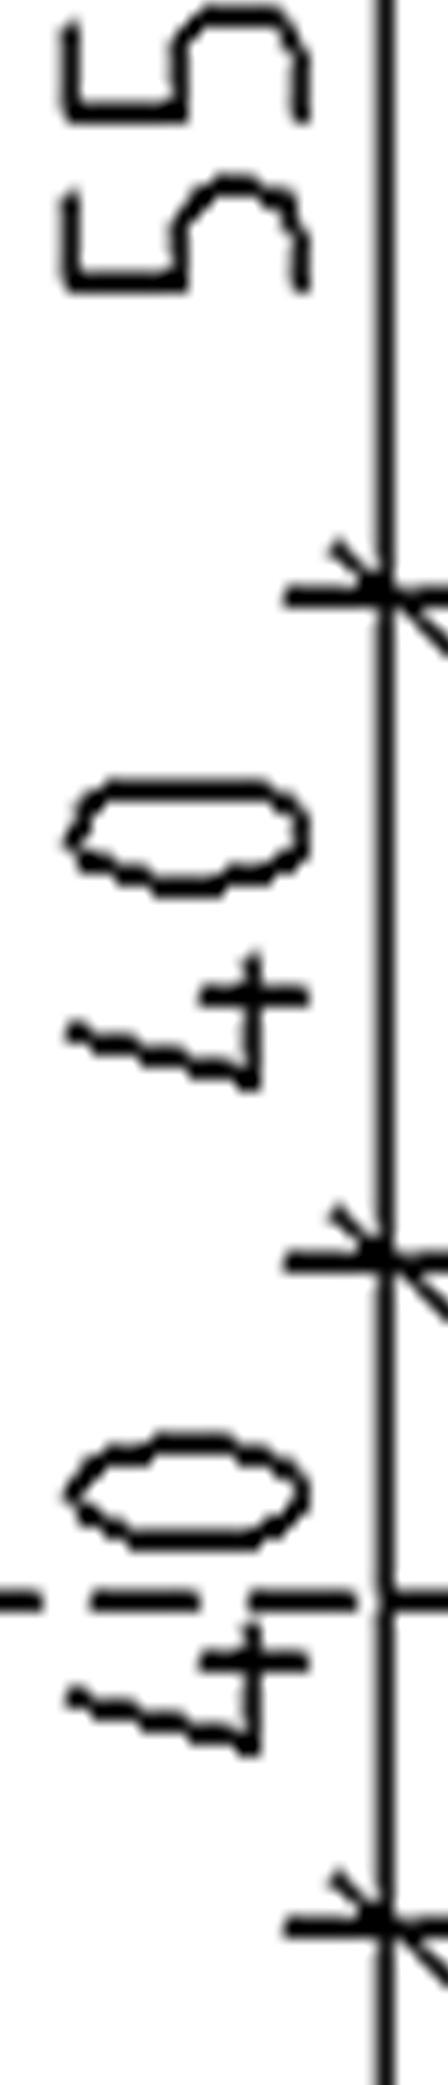 Leder Takåsarna är skarvade med 6 spikar, deras plac cering kan ses i figur 72.